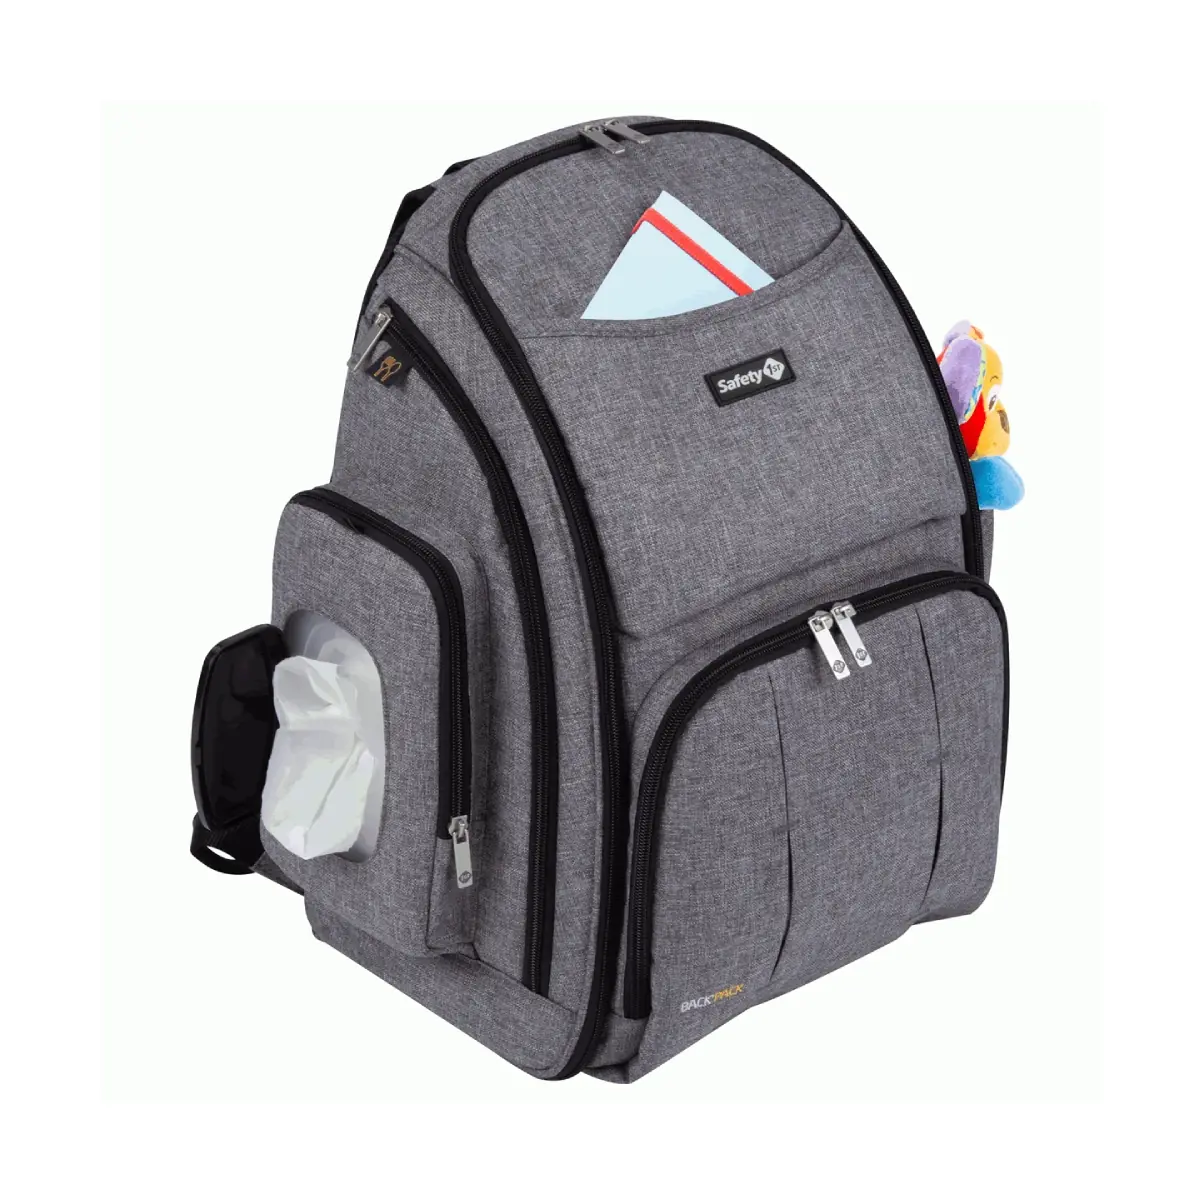 Safety 1st Backpack Changer Bag